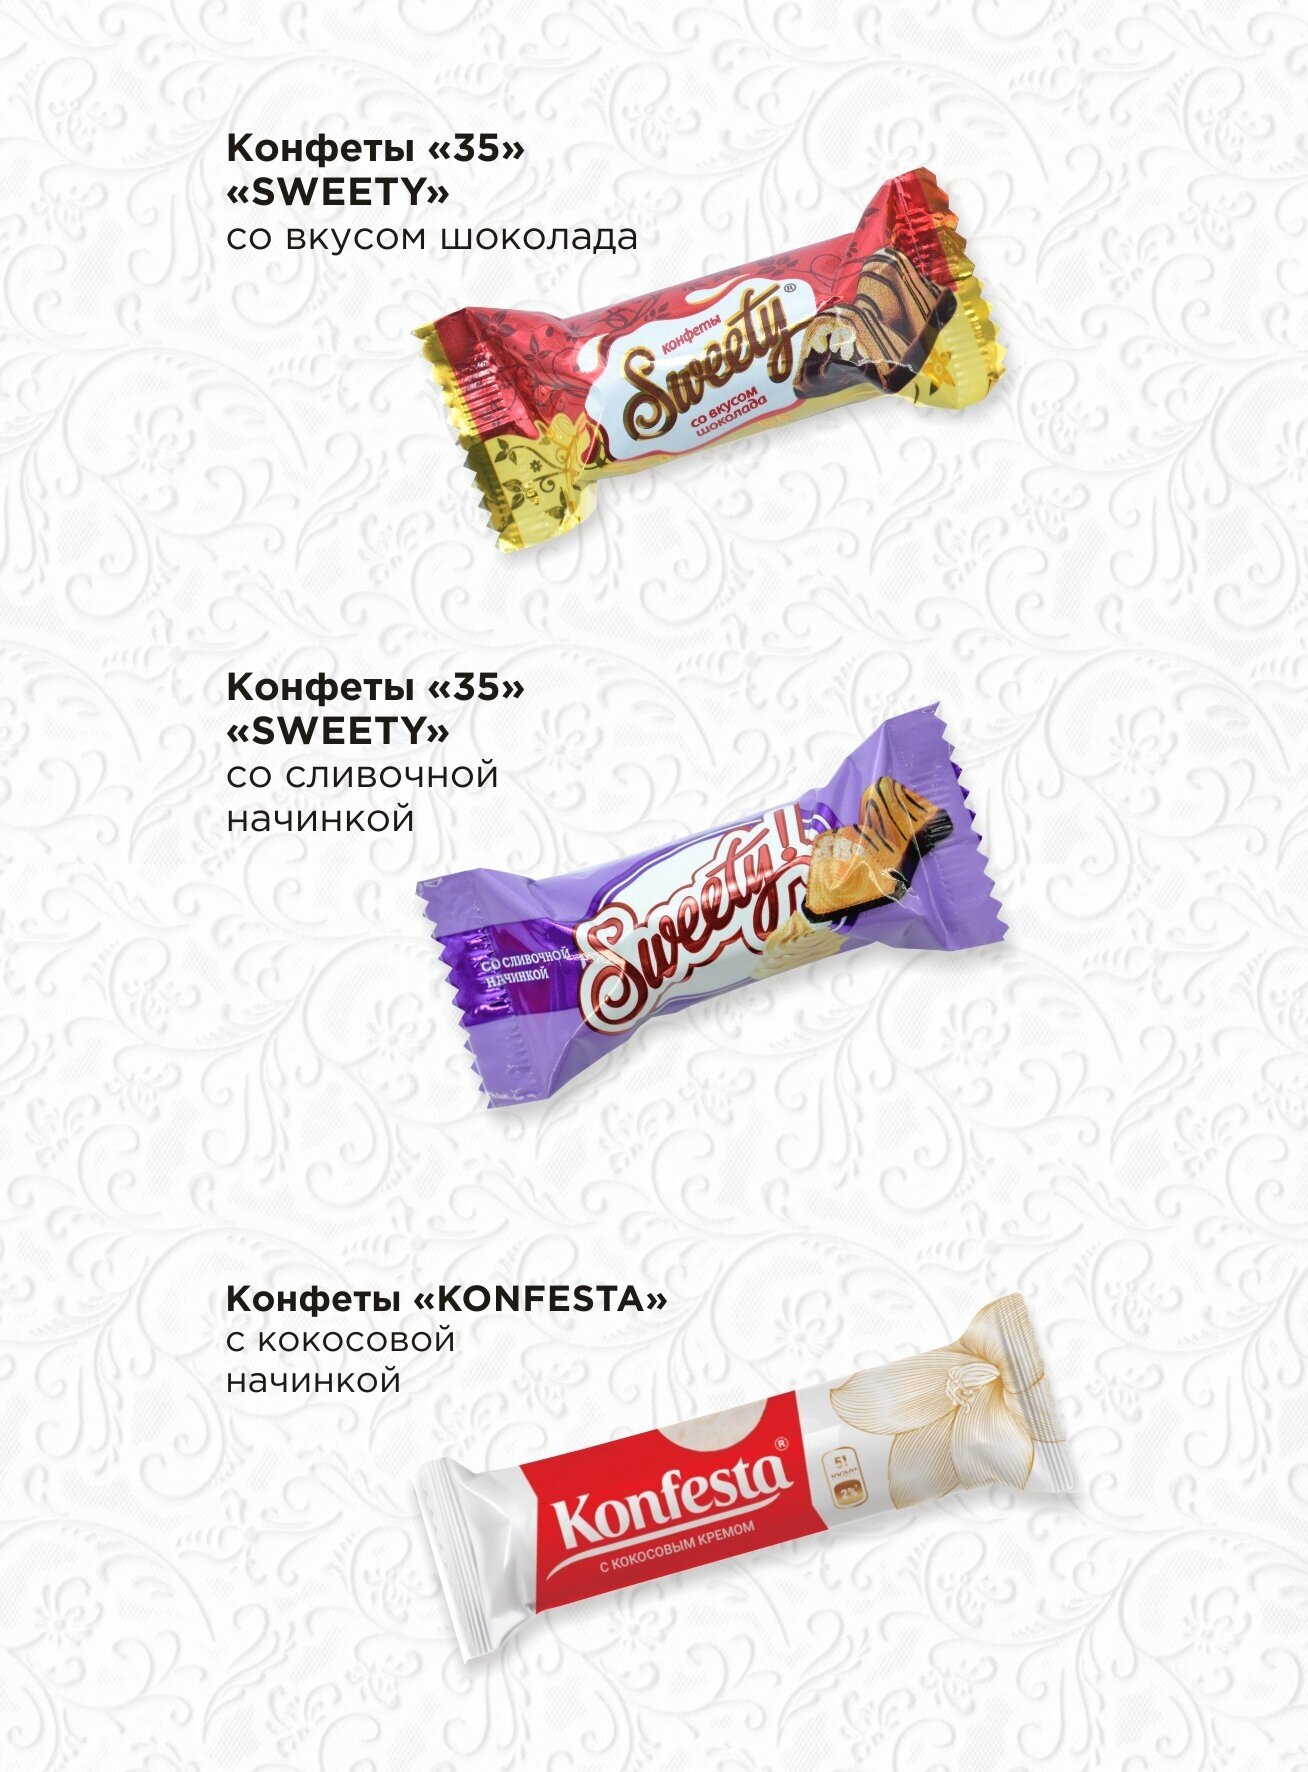 Шоколадные конфеты ассорти в коробке " Konfesta & SWEETY", Тимофеев ко,3 кг - фотография № 2